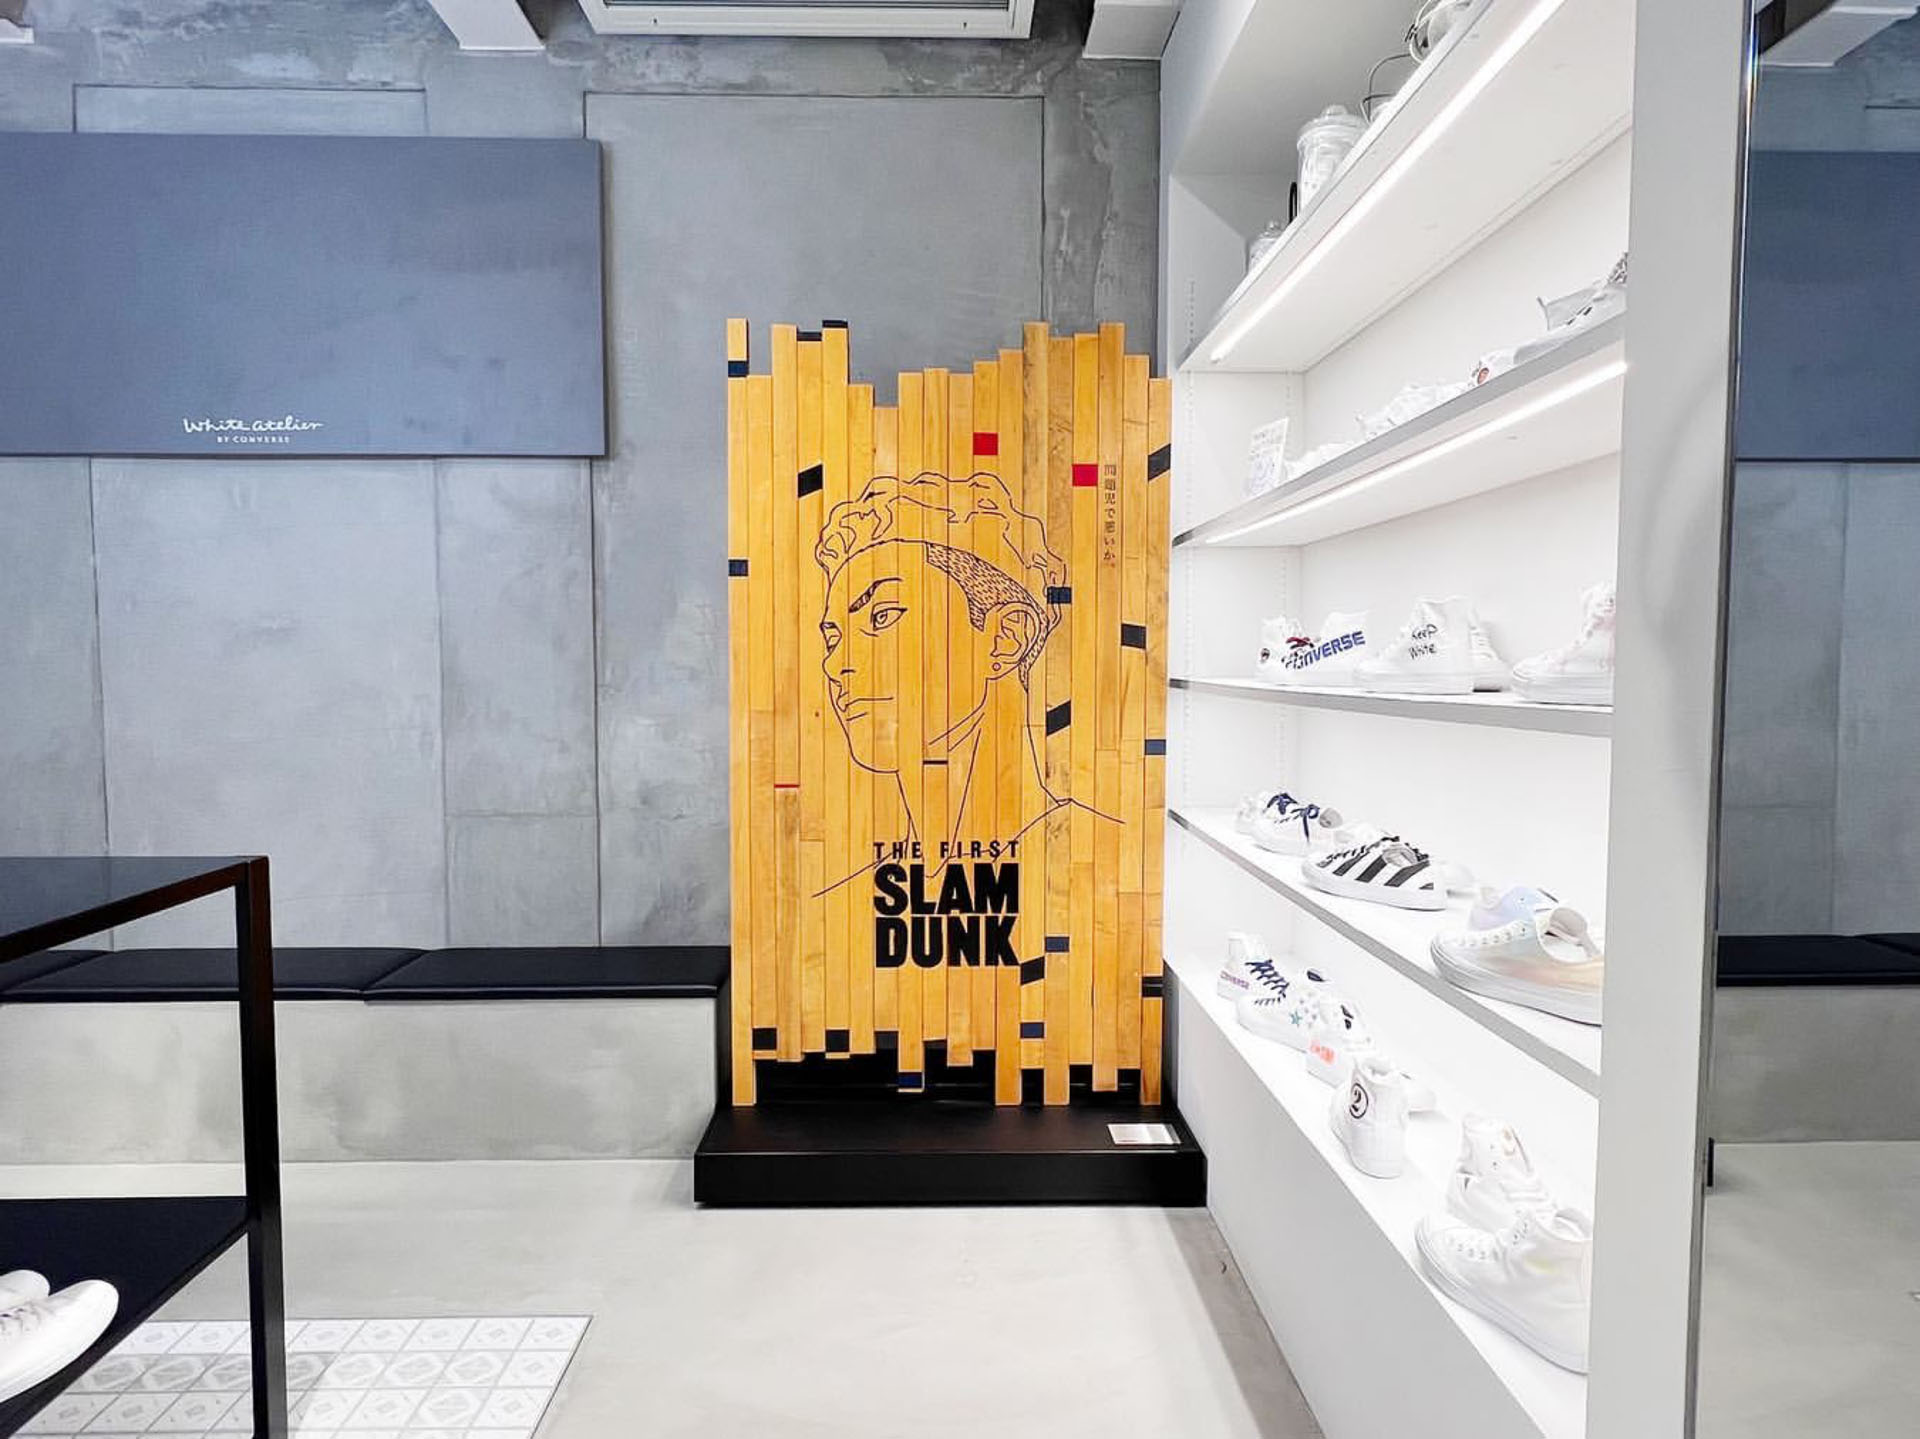 映画 The First Slam Dunk ビジュアルボードが期間限定で設置 Fly Basketball Culture Magazine バスケットボール ファッション カルチャー マガジン